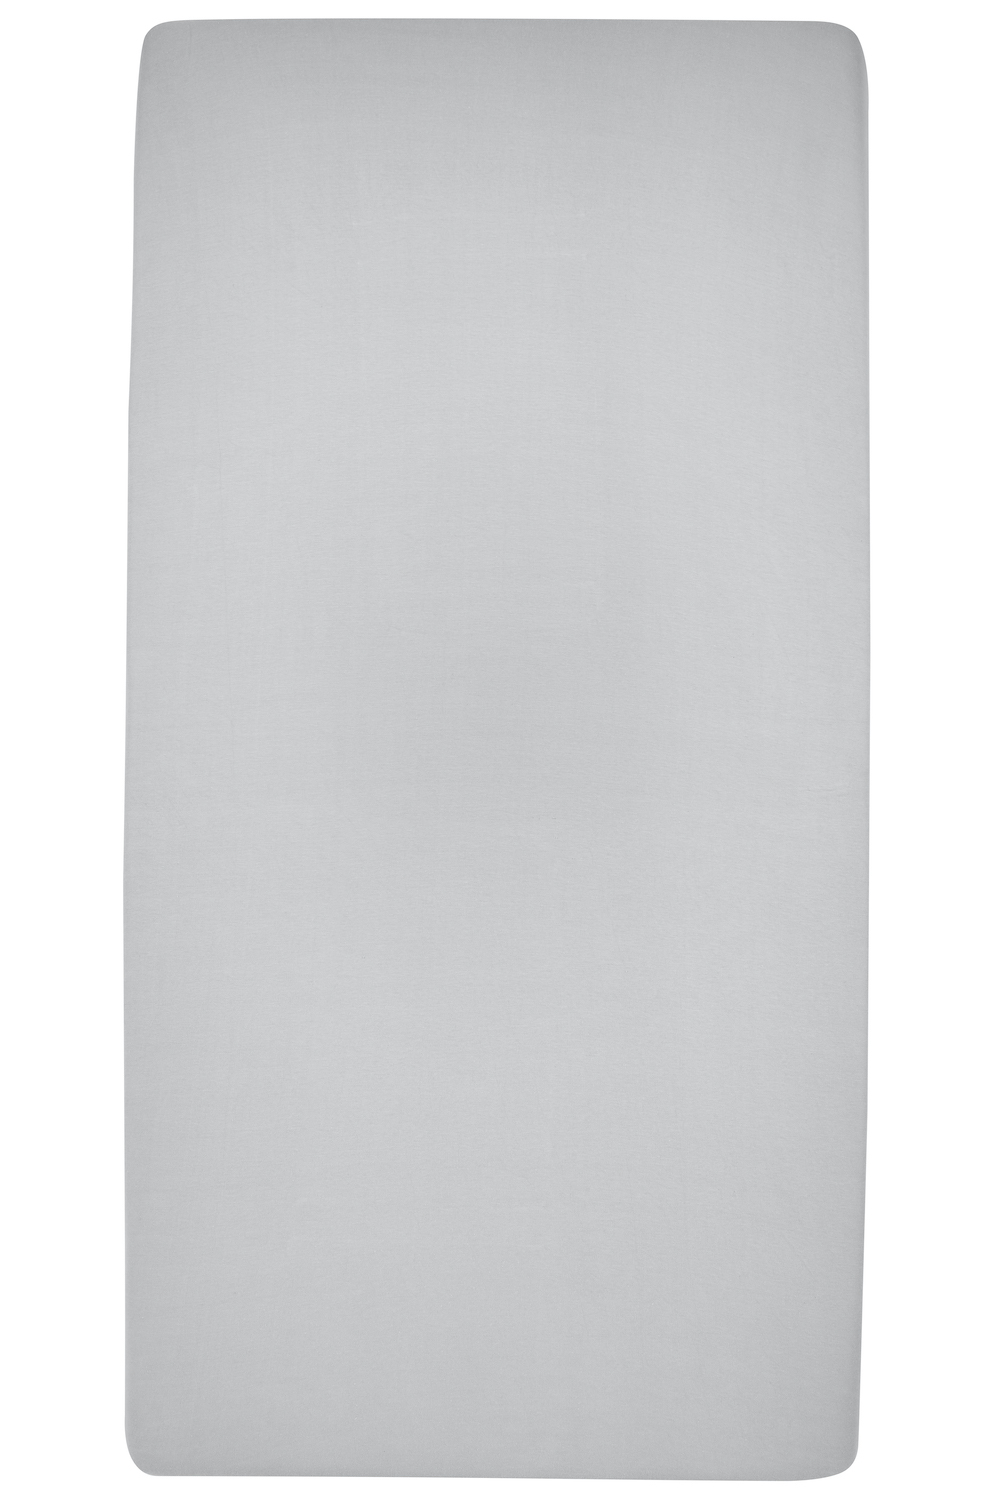 Hoeslaken eenpersoonsbed Uni - light grey - 90x210/220cm